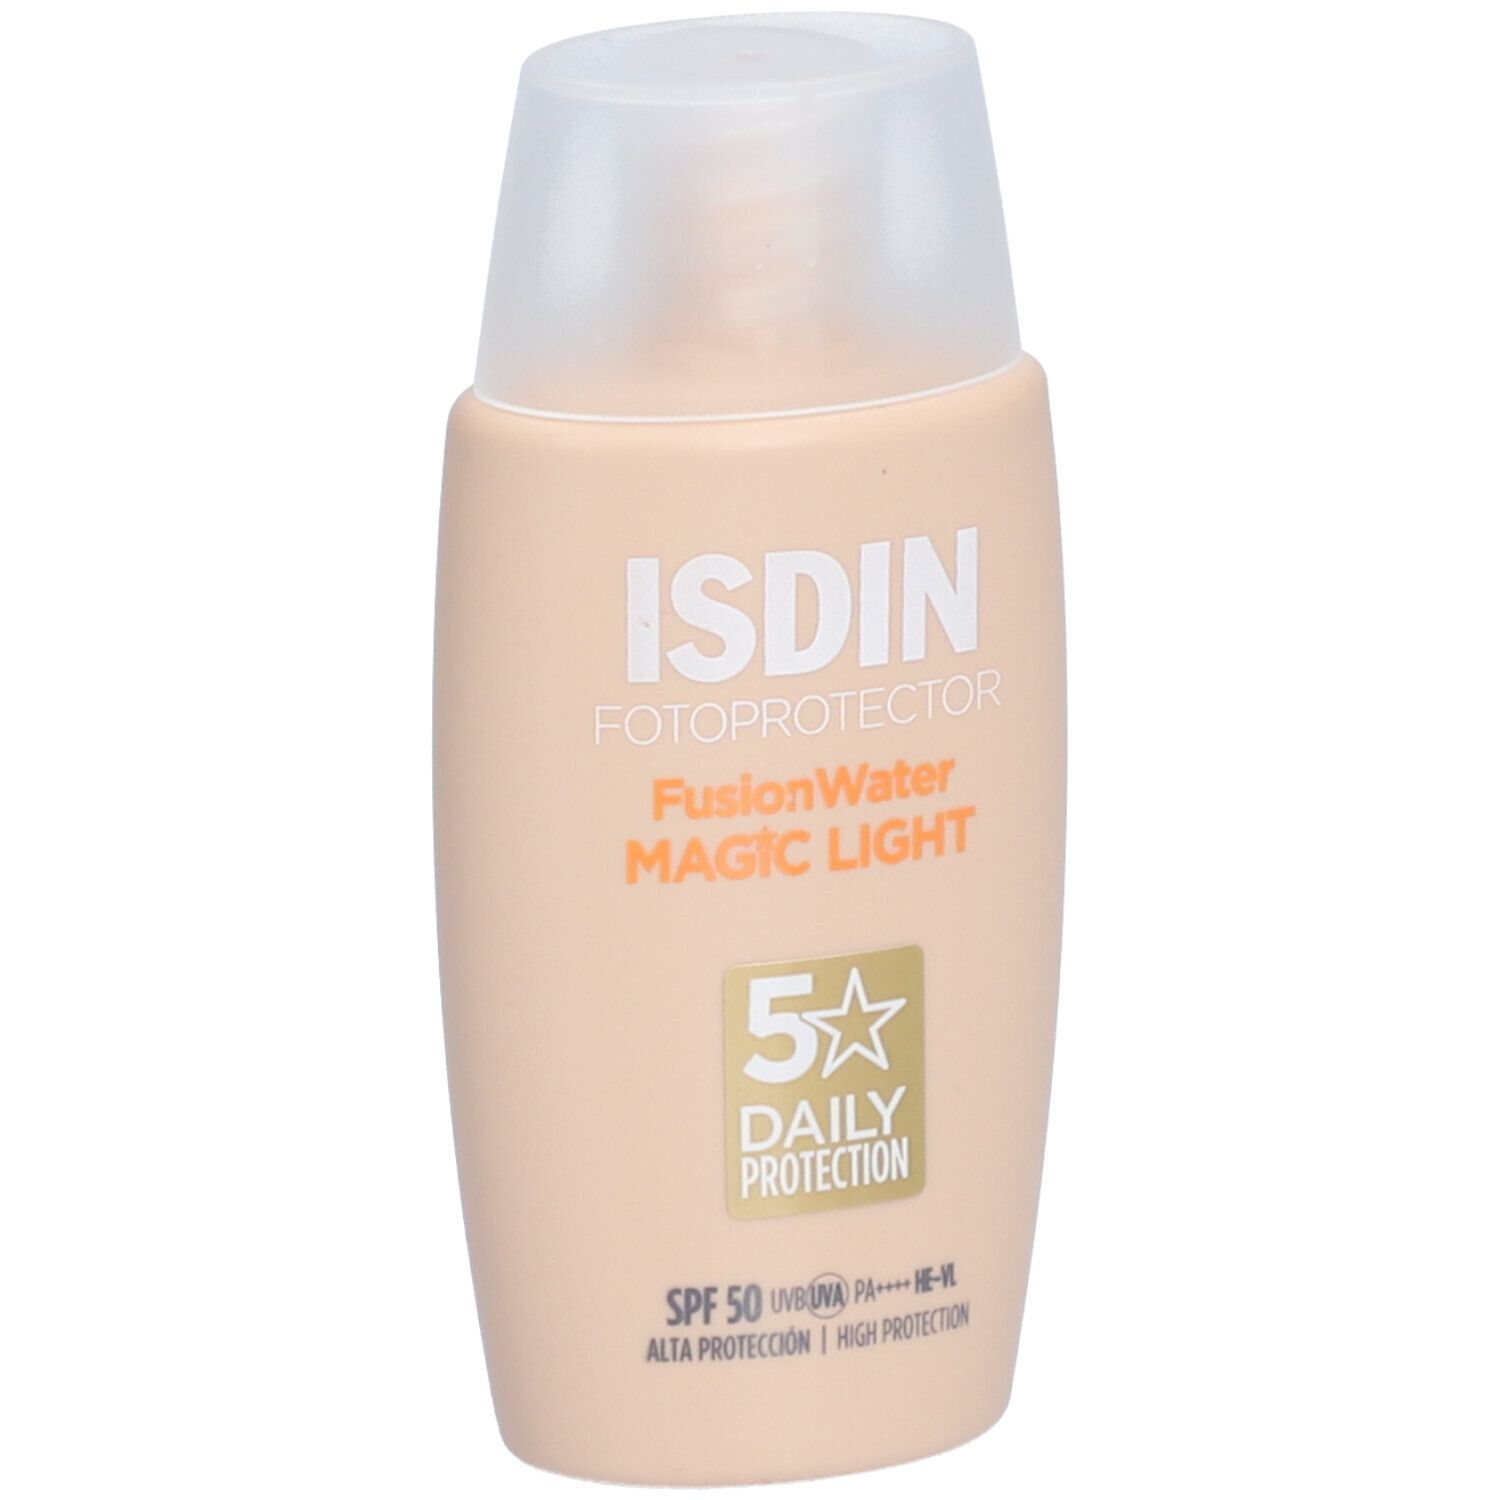 Fotoprotector ISDIN Fusion Water Color Light LSF 50 ultraleichter getönter Sonnenschutz für helle Haut